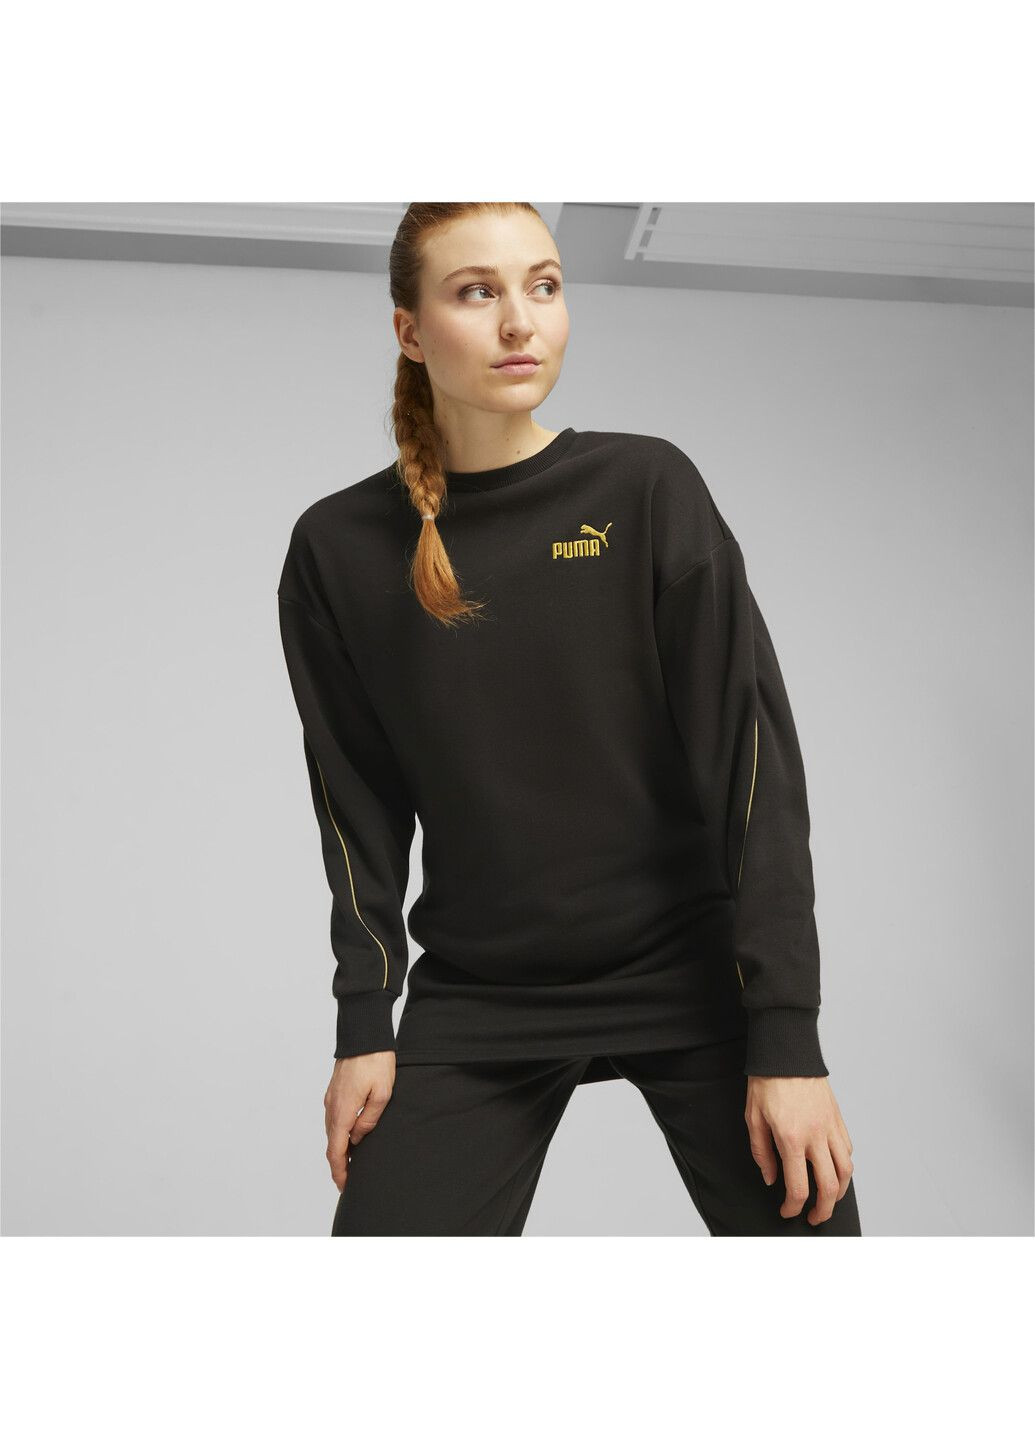 Черное спортивное платье ess+ minimal gold women's dress Puma однотонное